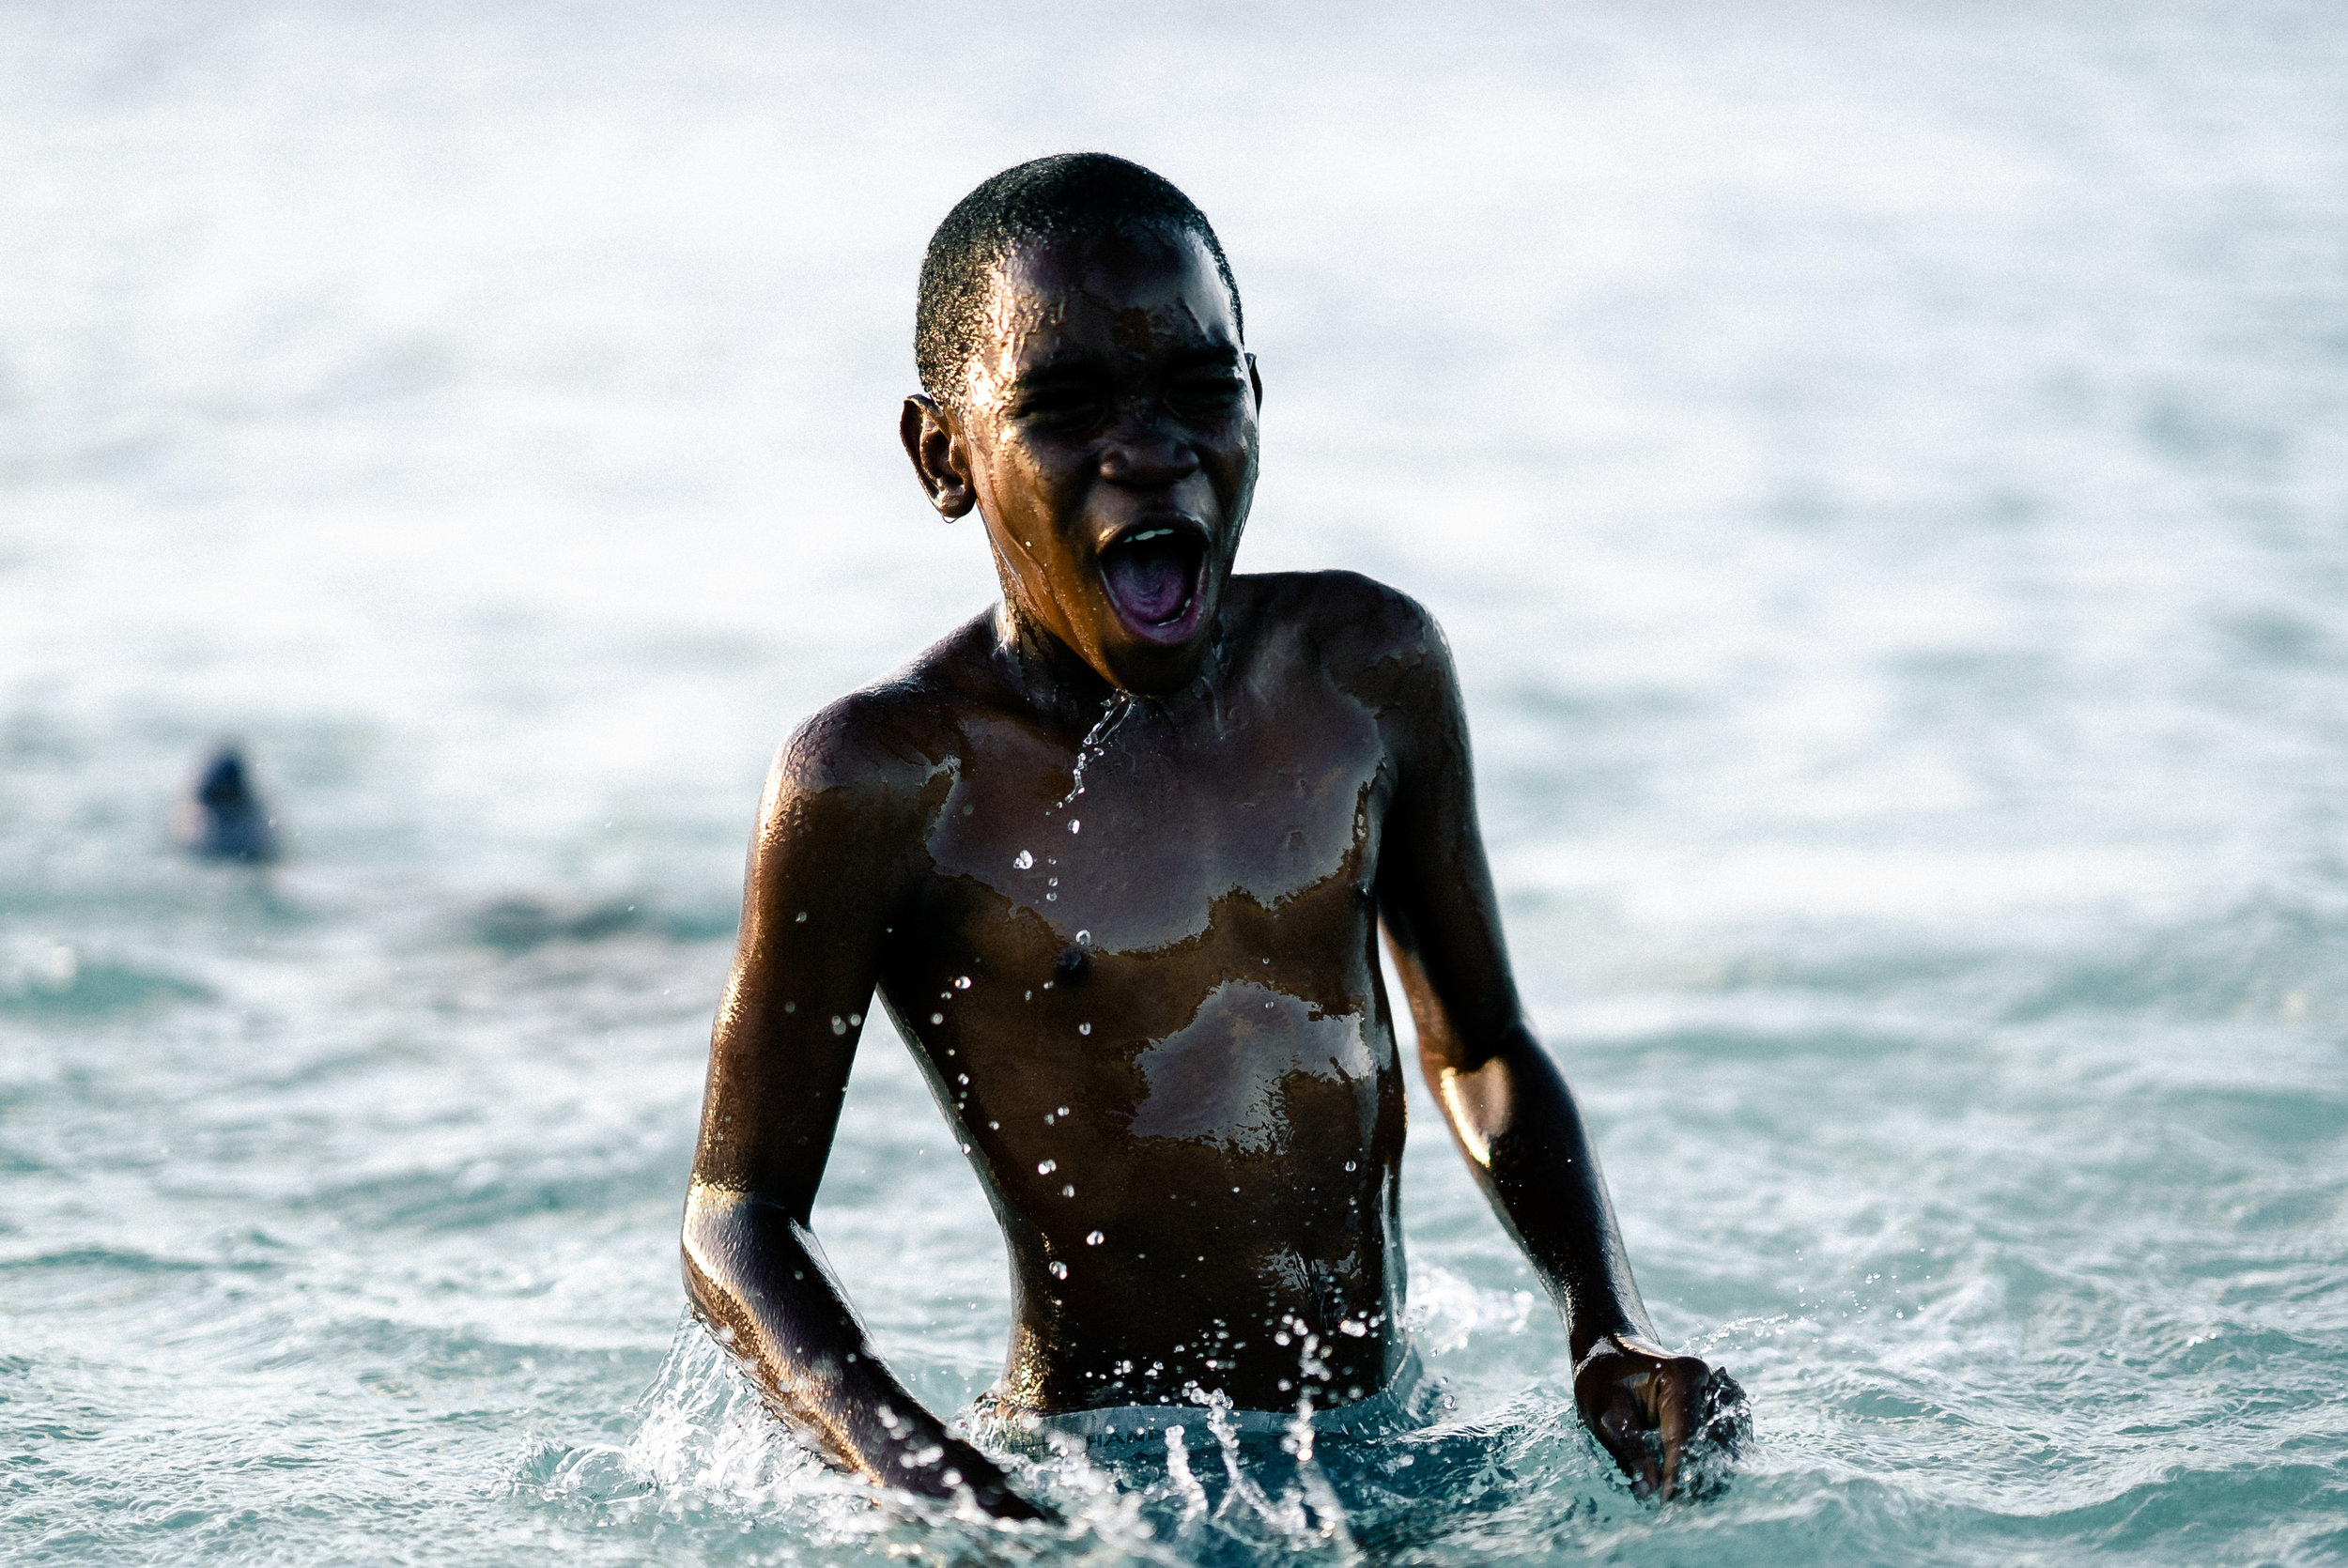 beach kid in water-00982.jpg